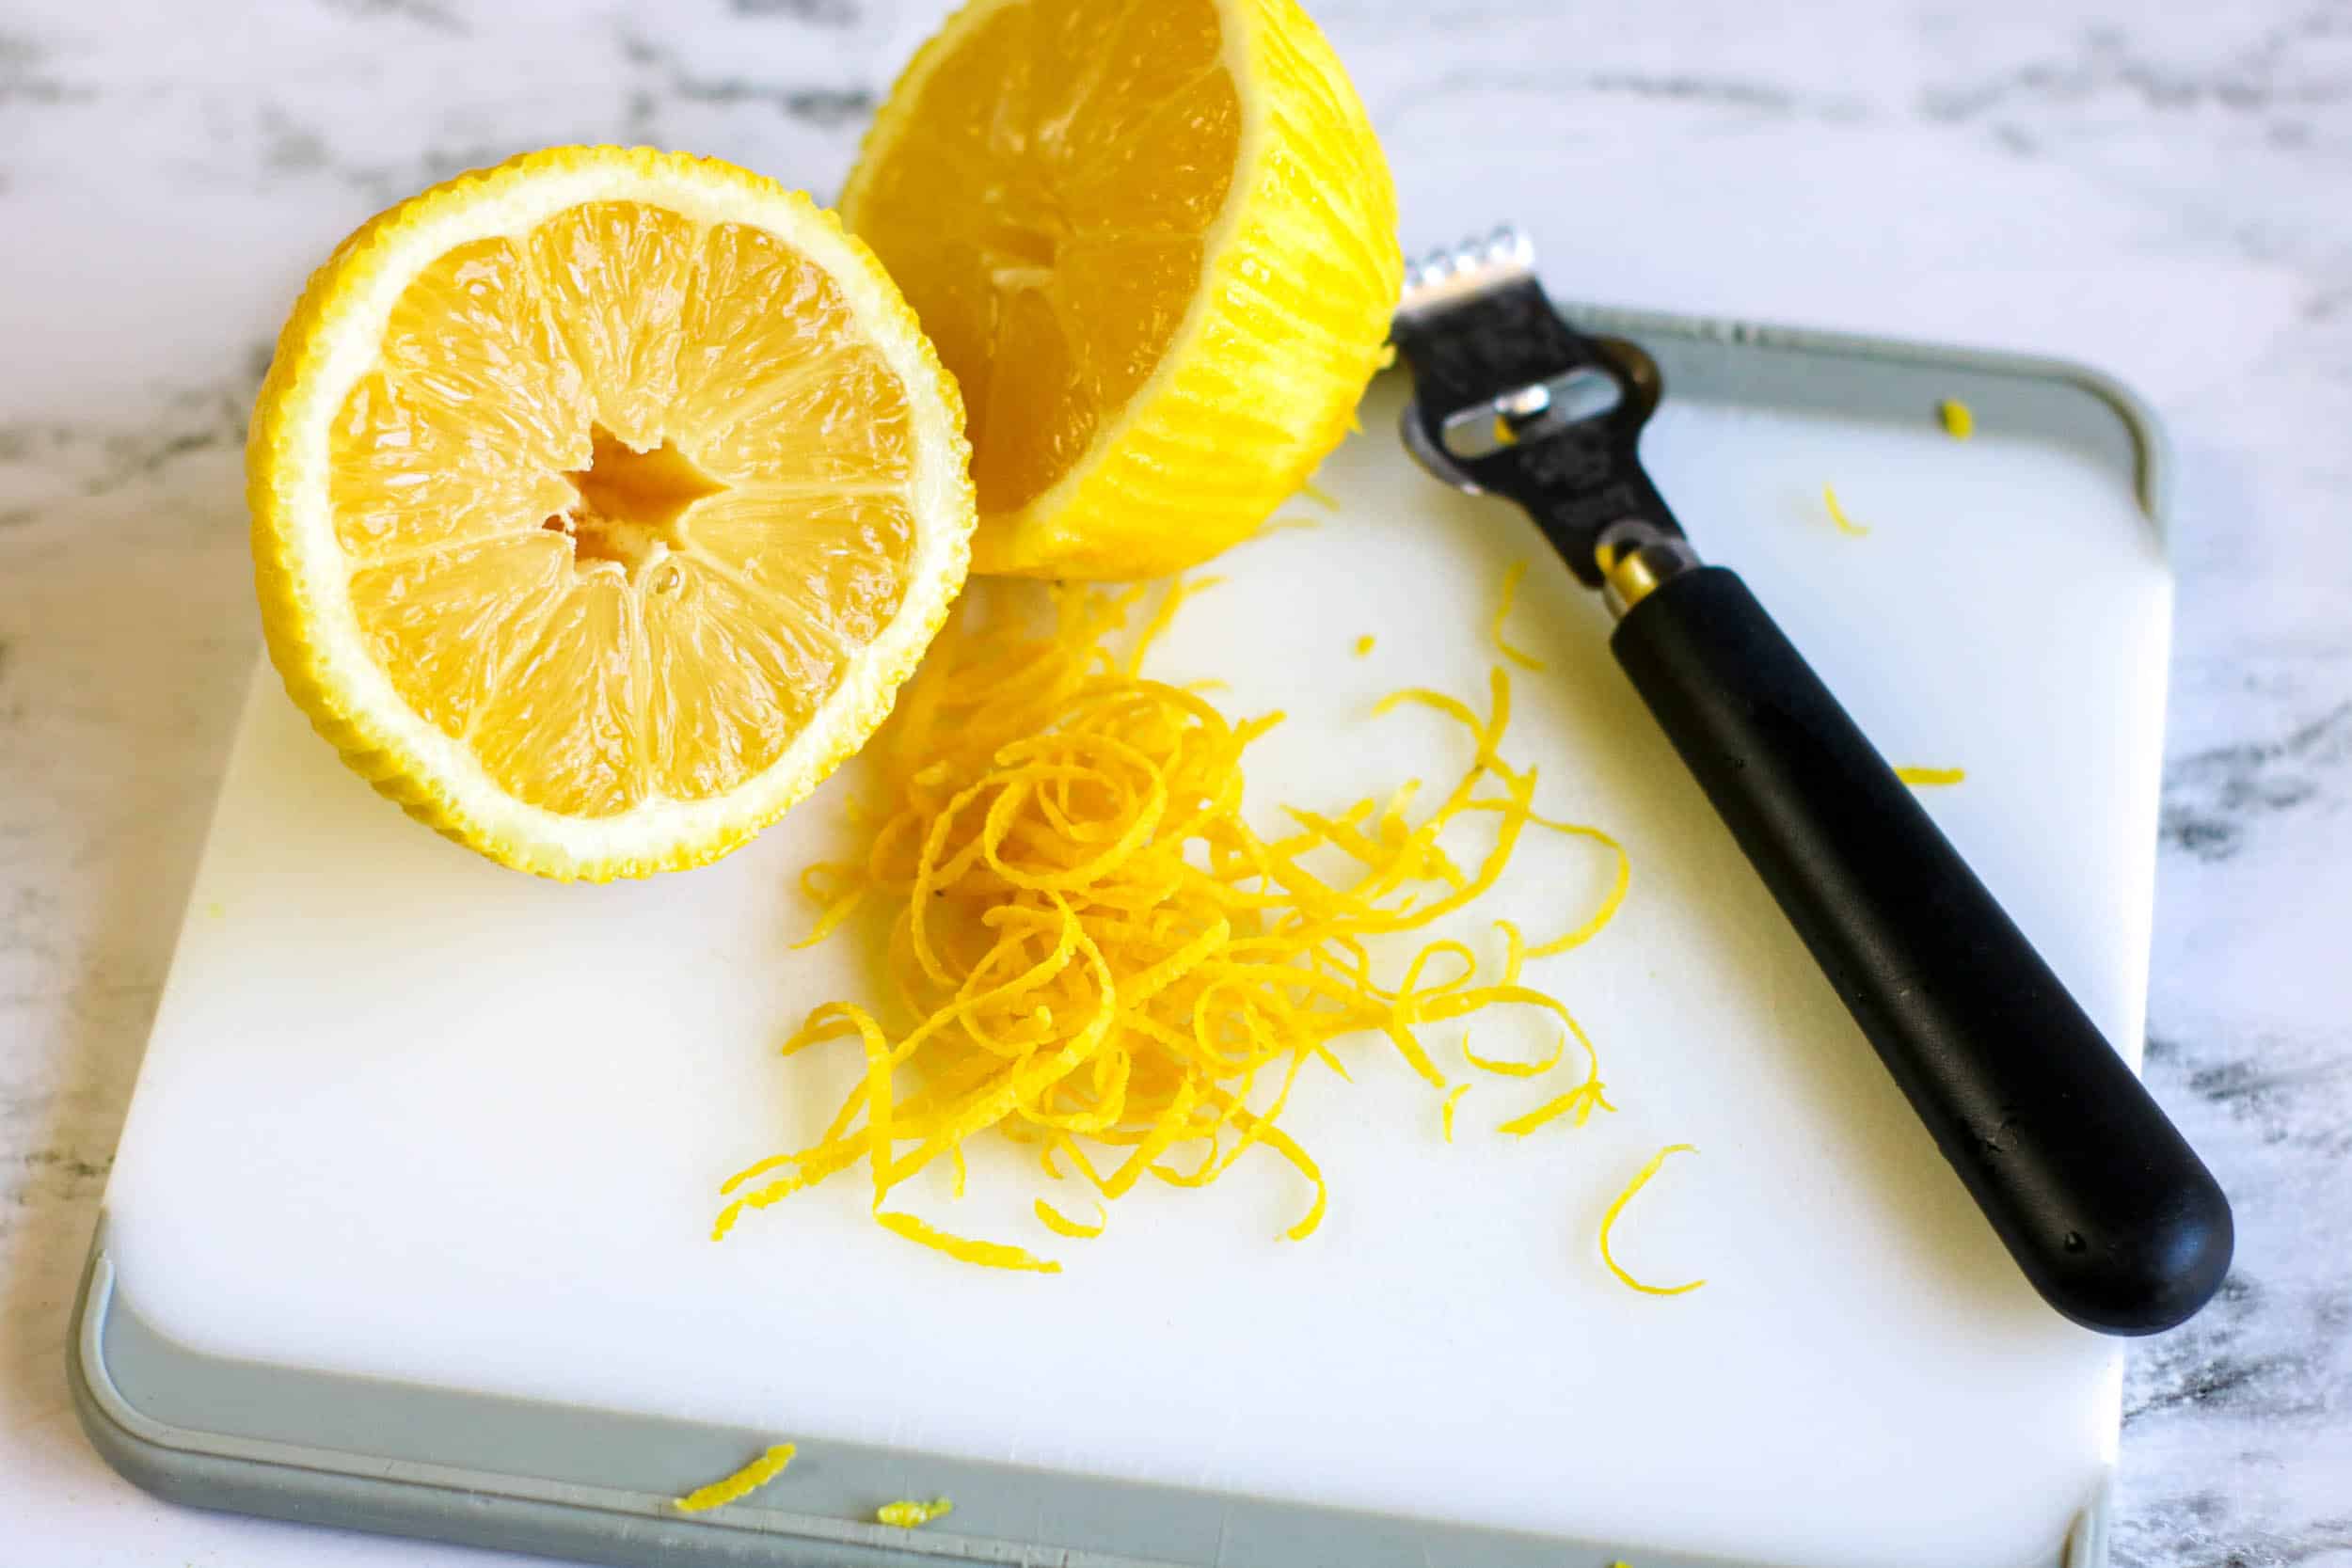 lemon is zested cut in half